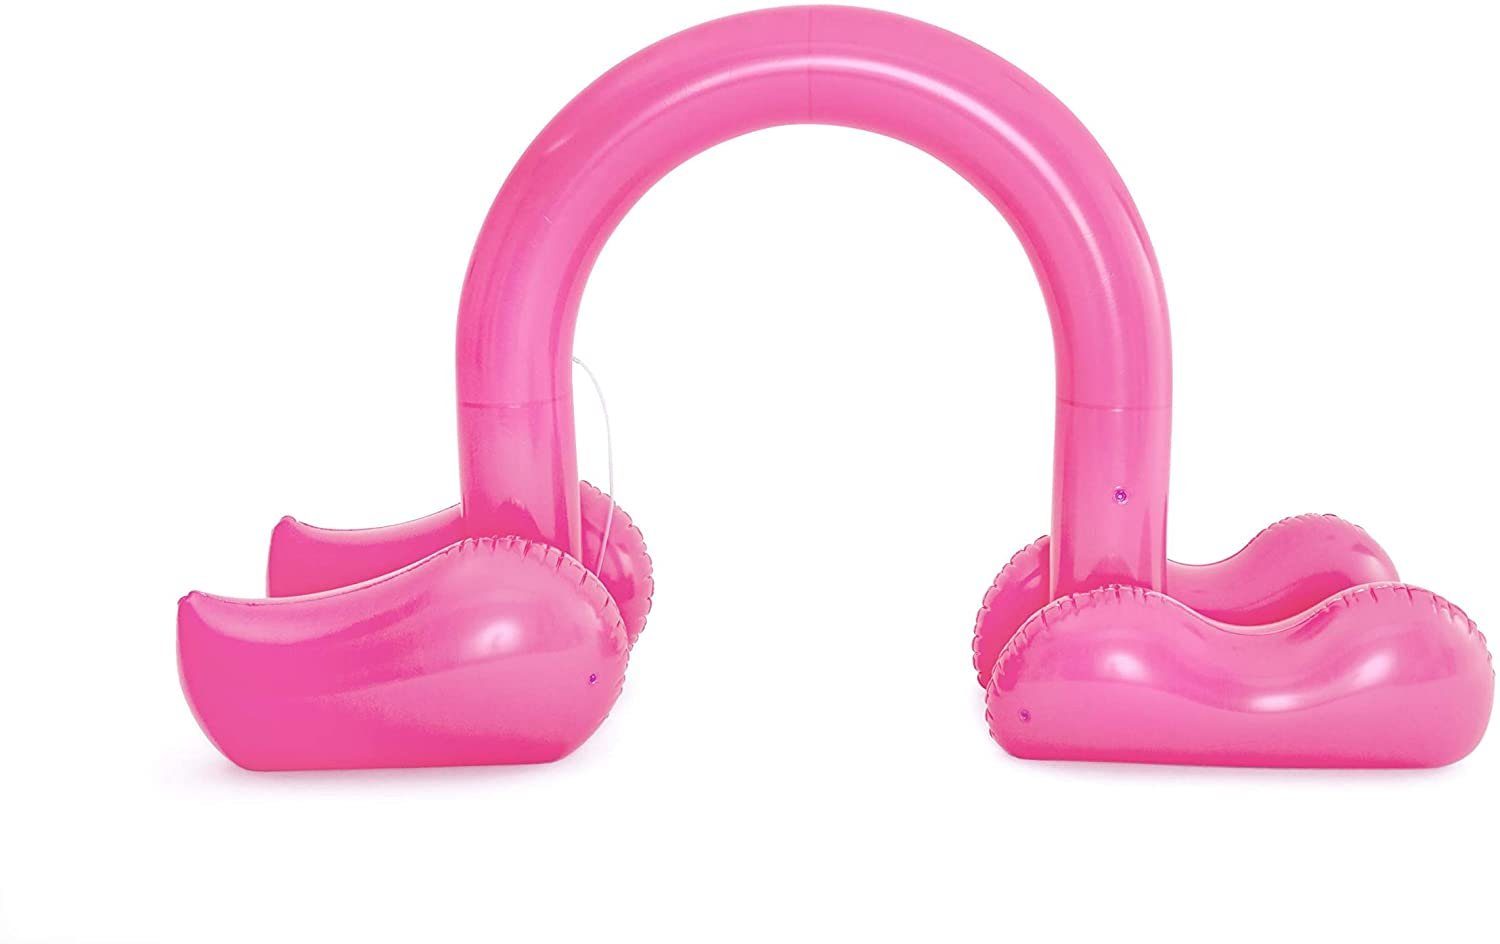 Bestway Flamingo Jumbo Badespielzeug